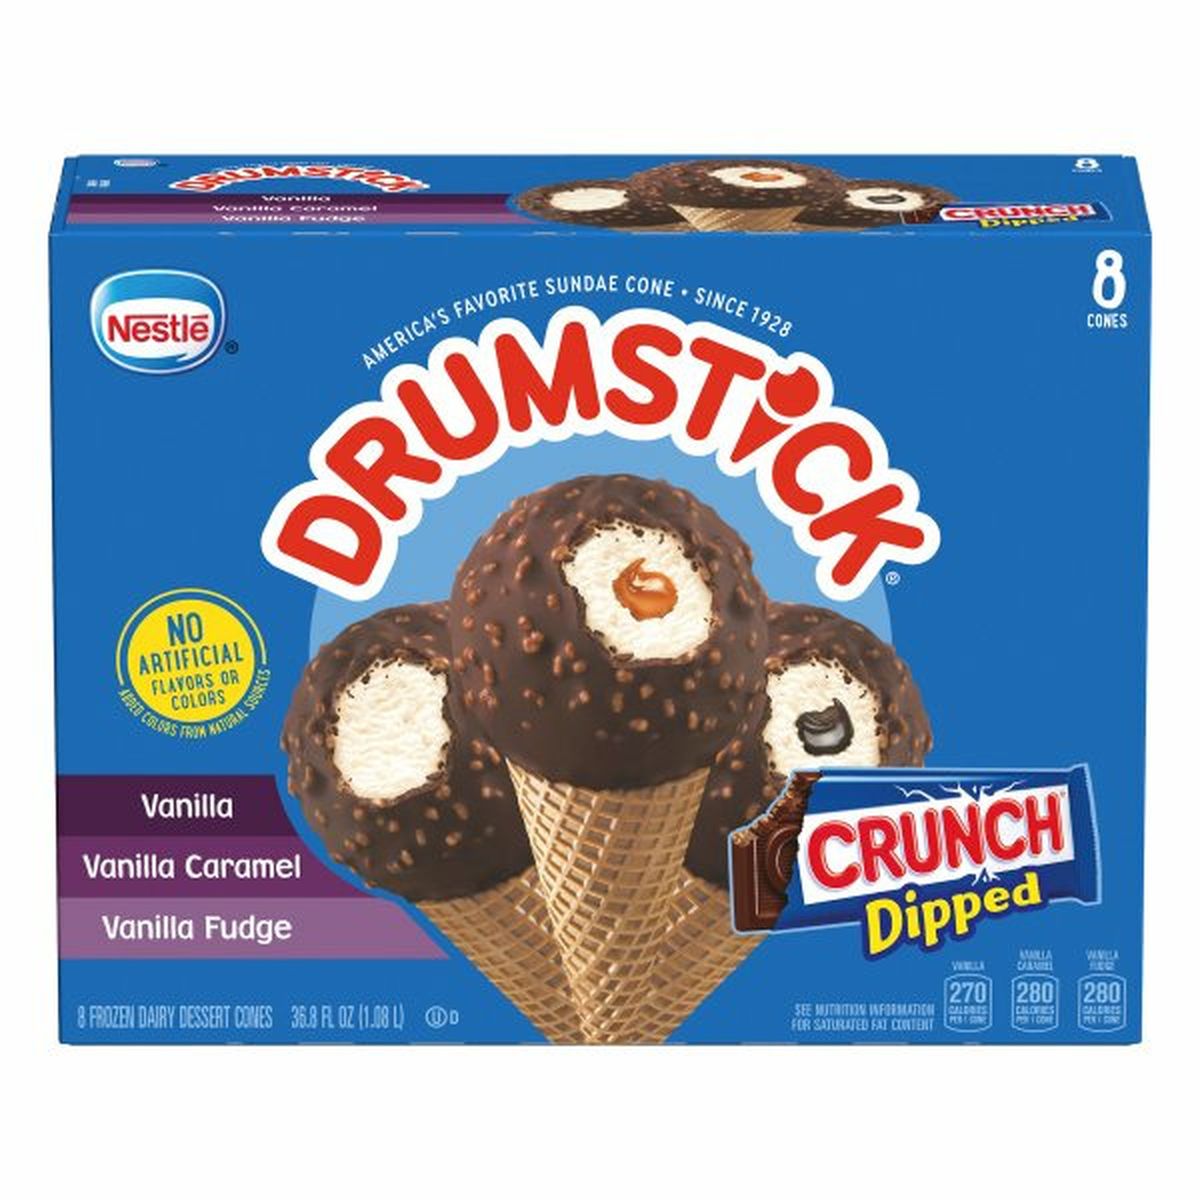 Calories in Drumstick Frozen Dessert Cones, Crunch Dipped